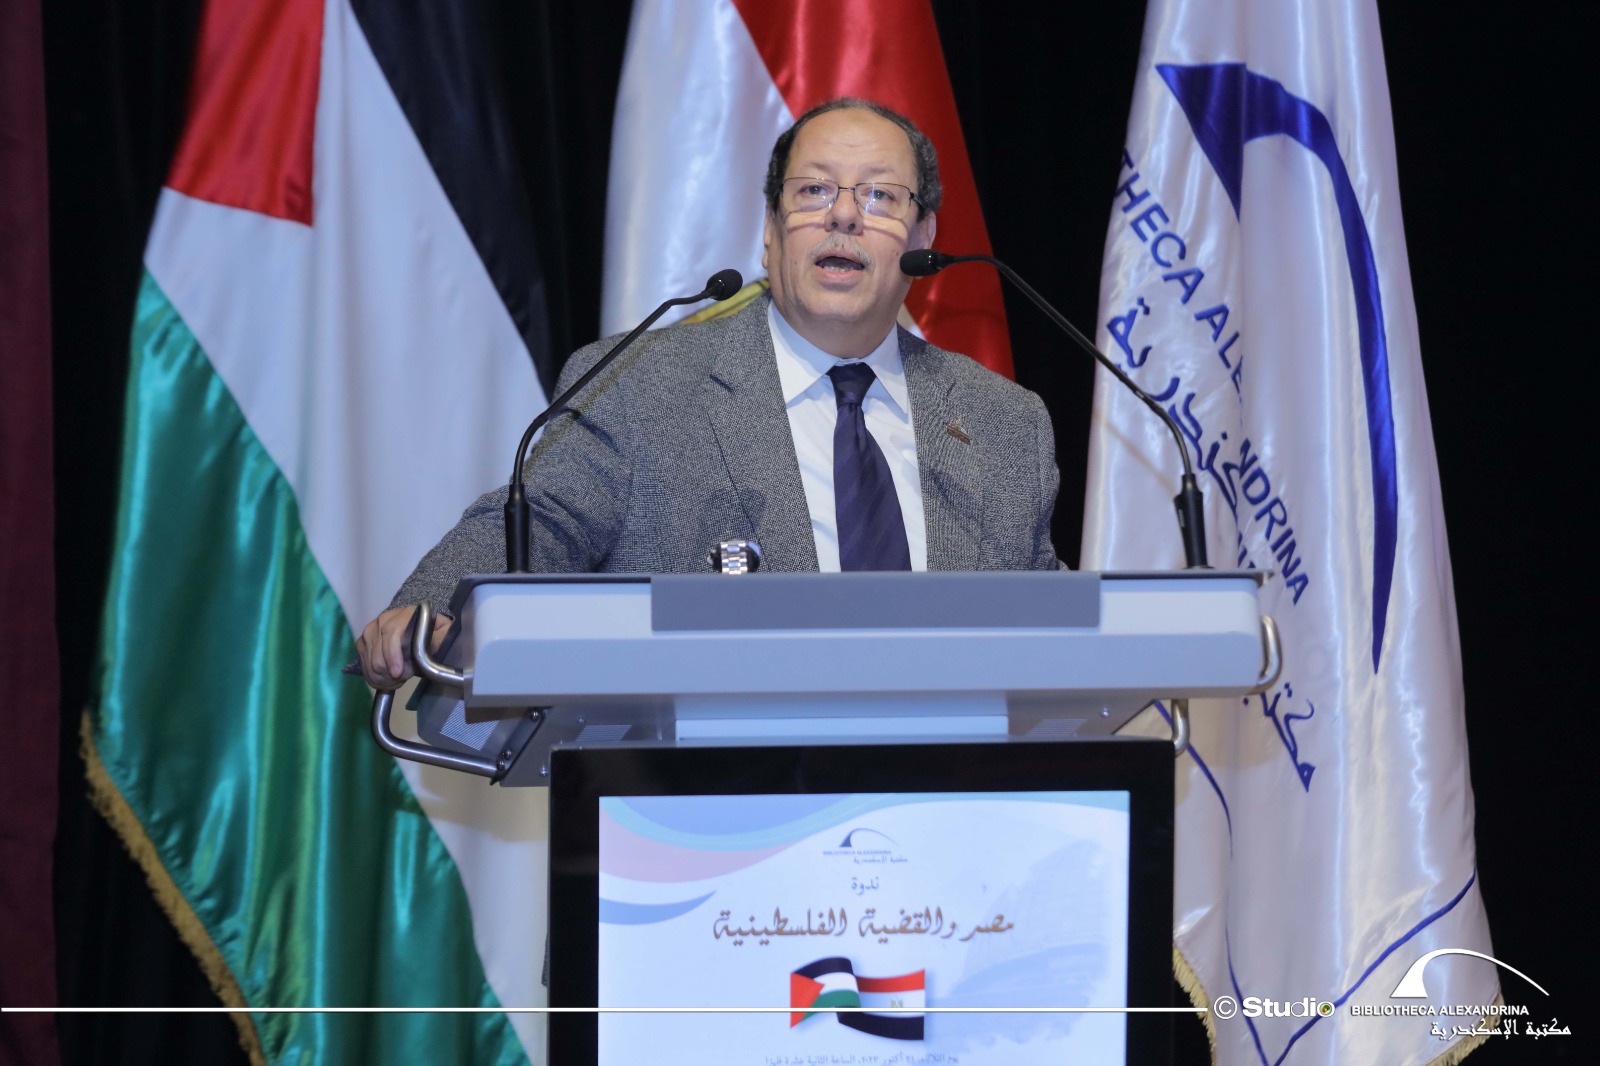 مصر والقضية الفلسطينية في لقاء بمكتبة الإسكندرية   9